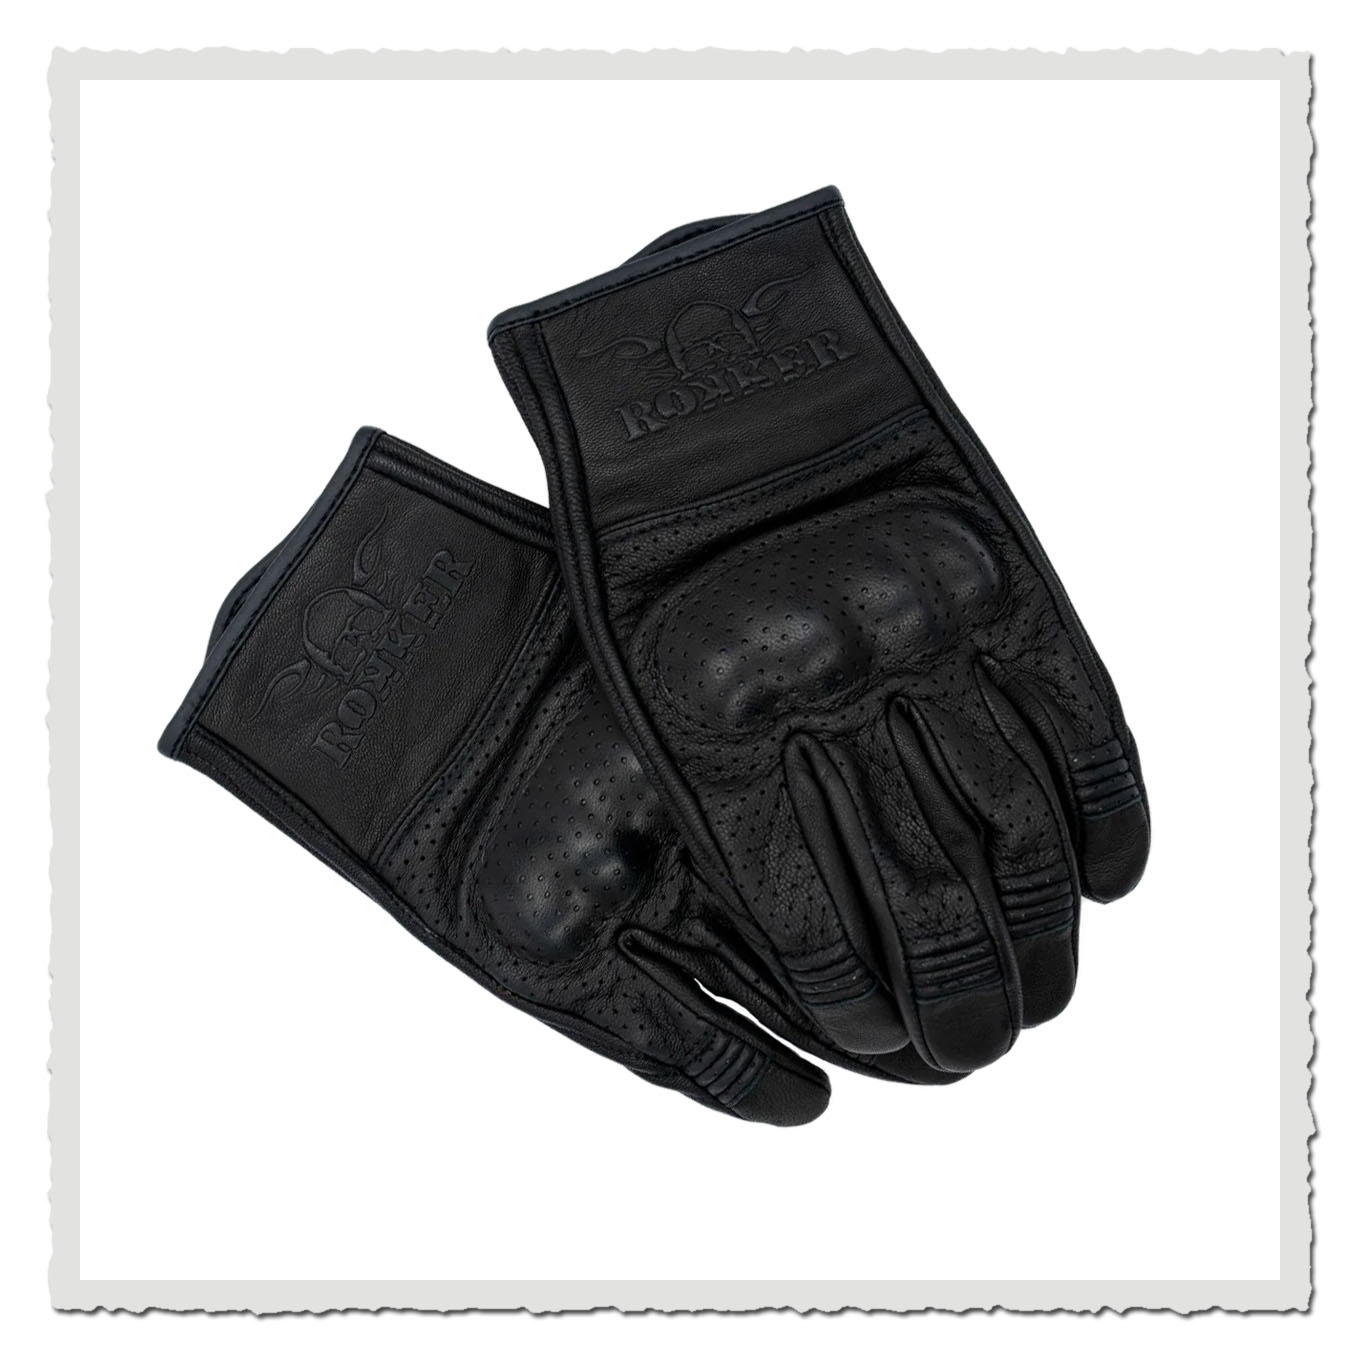 Motorrad Handschuhe Tucson Black